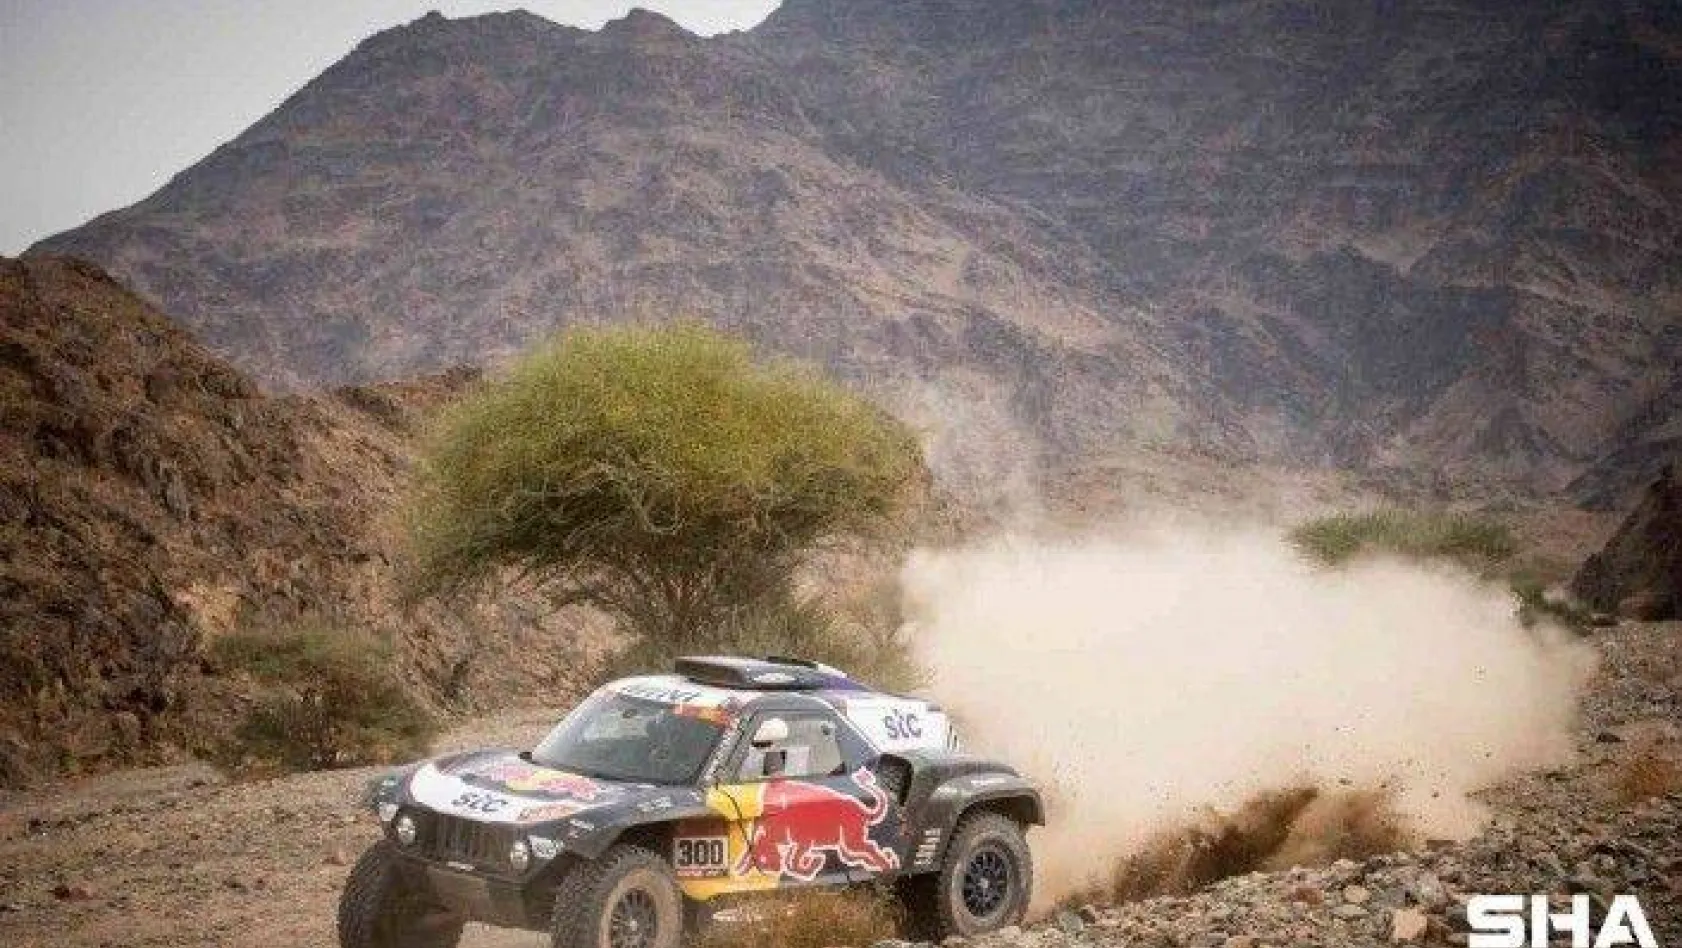 Dünyanın en zorlu yarışı Dakar Rallisi başlıyor